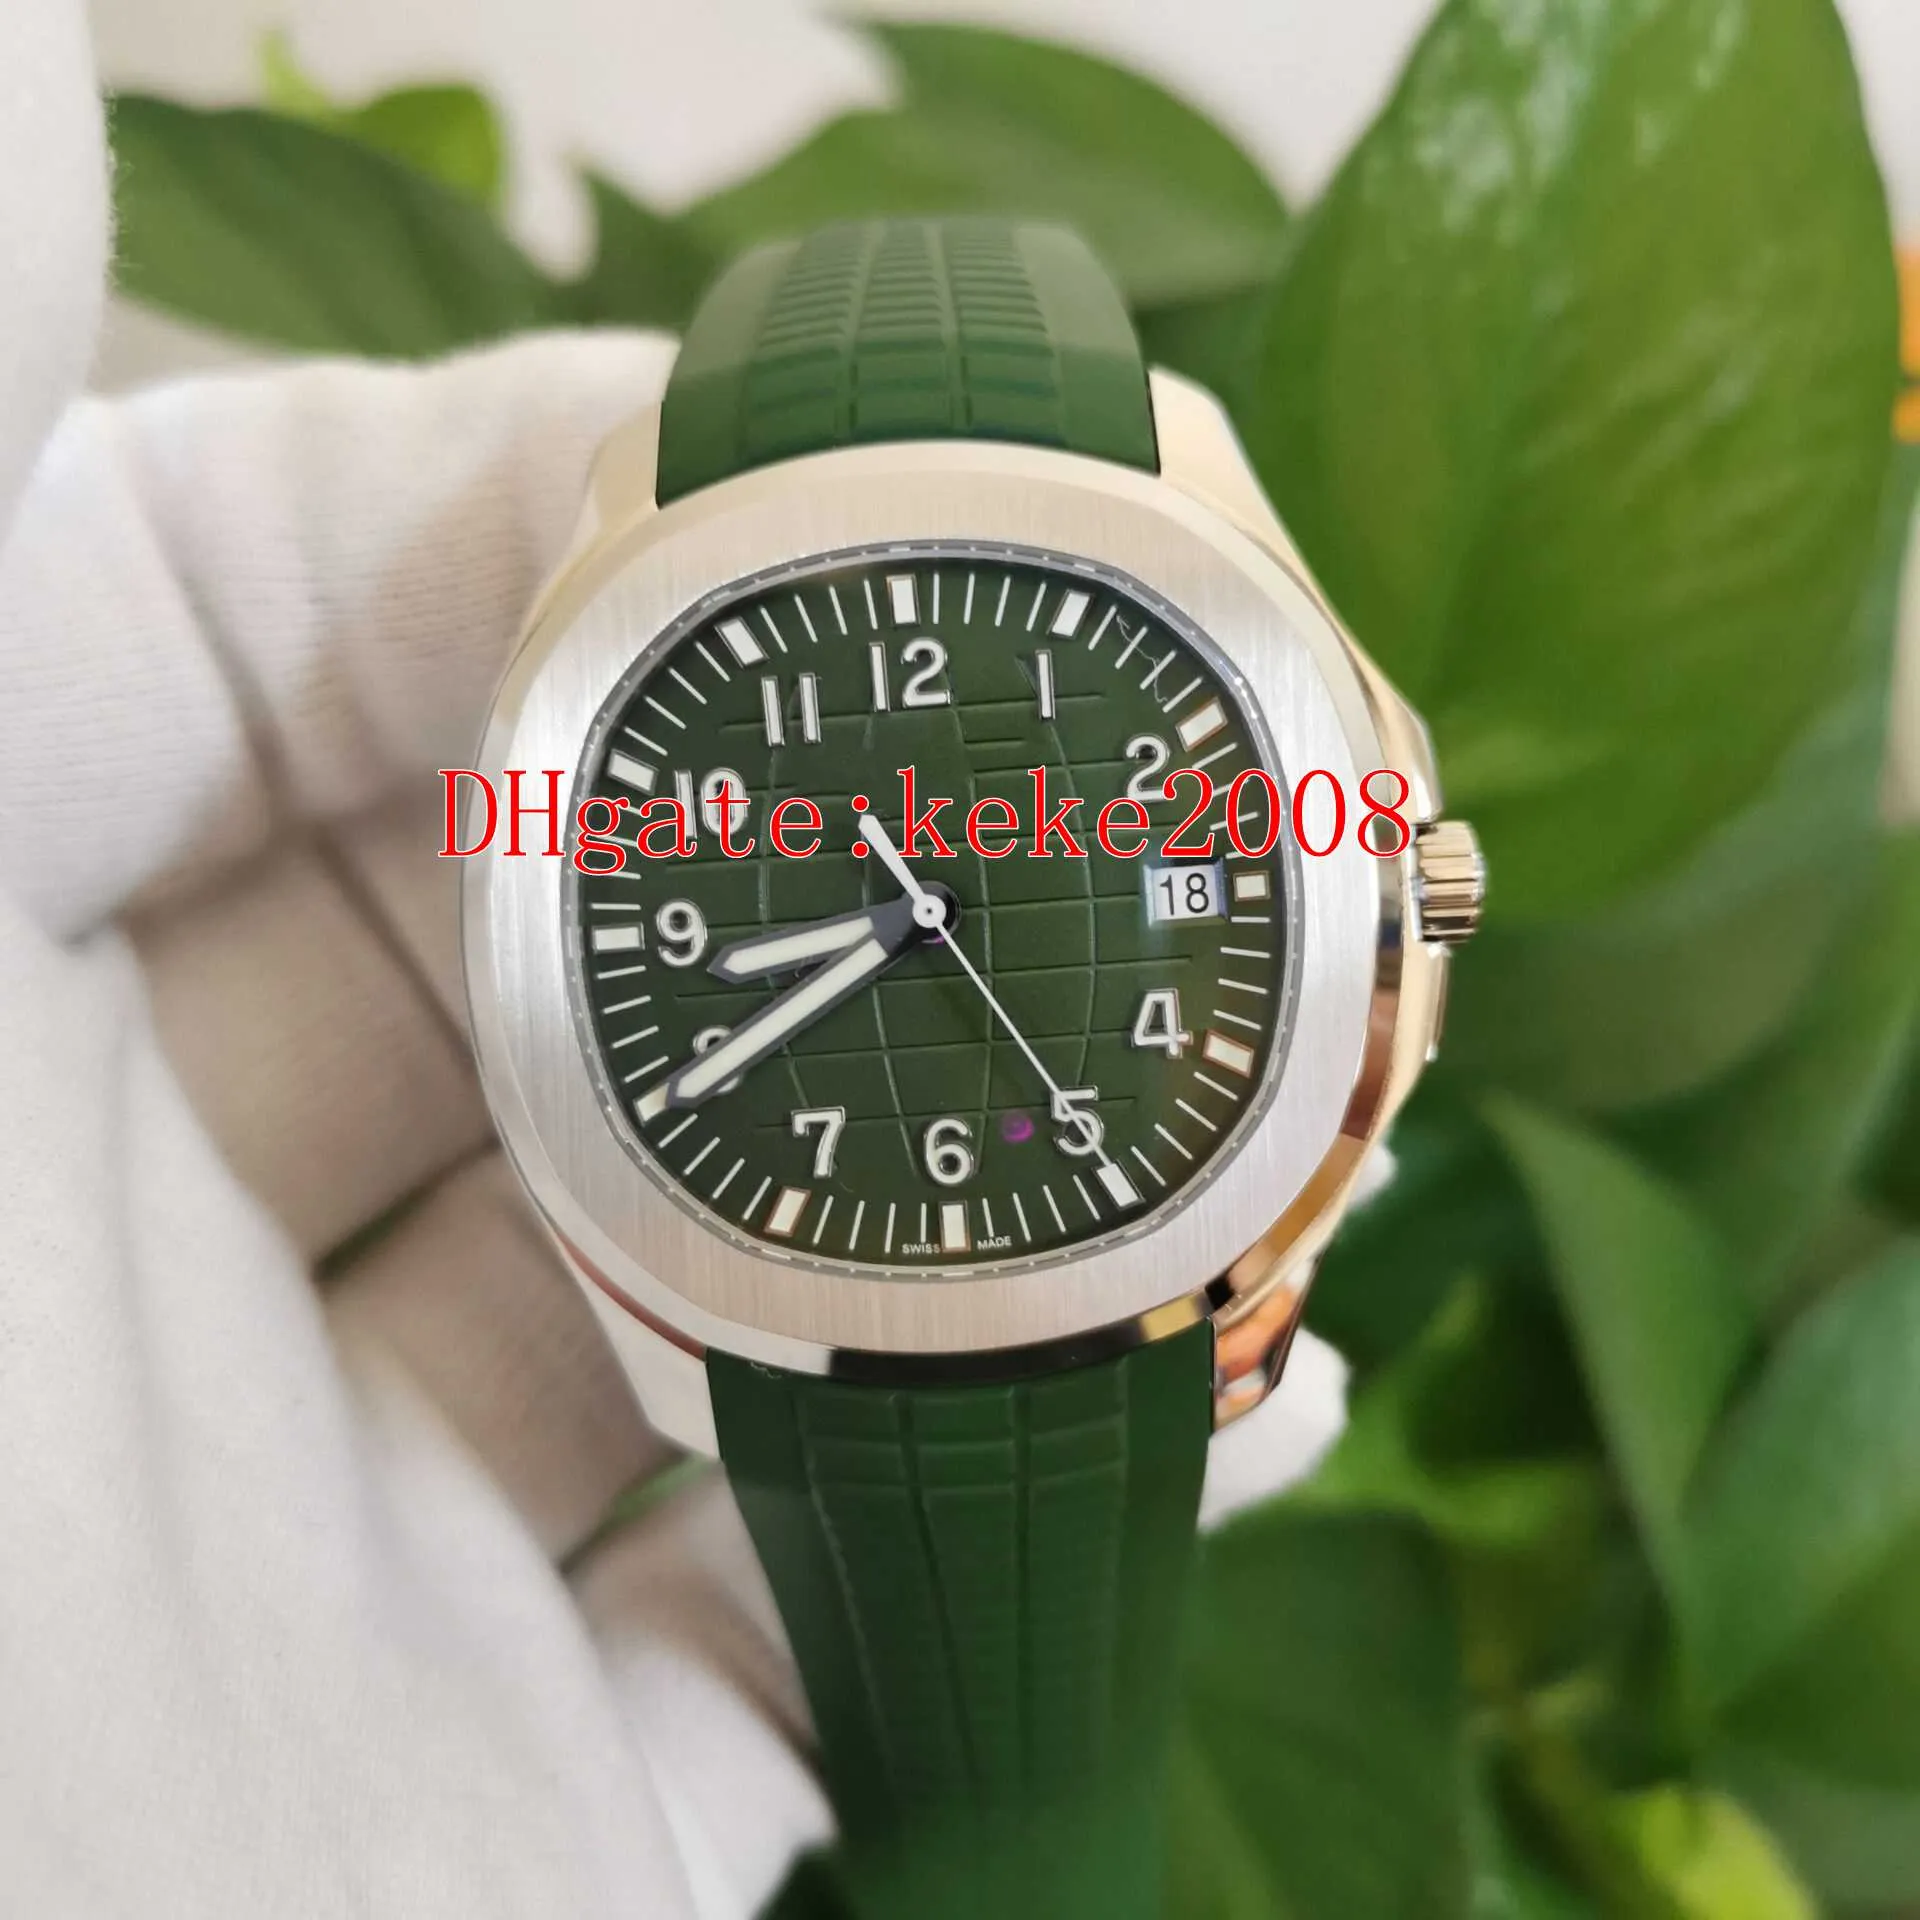 Perfeitos relógios de pulso 3kf Waches 5168G-010 5168 42mm impermeável calibre verde 324 s c movimento mecânico transparente automático de borracha natural